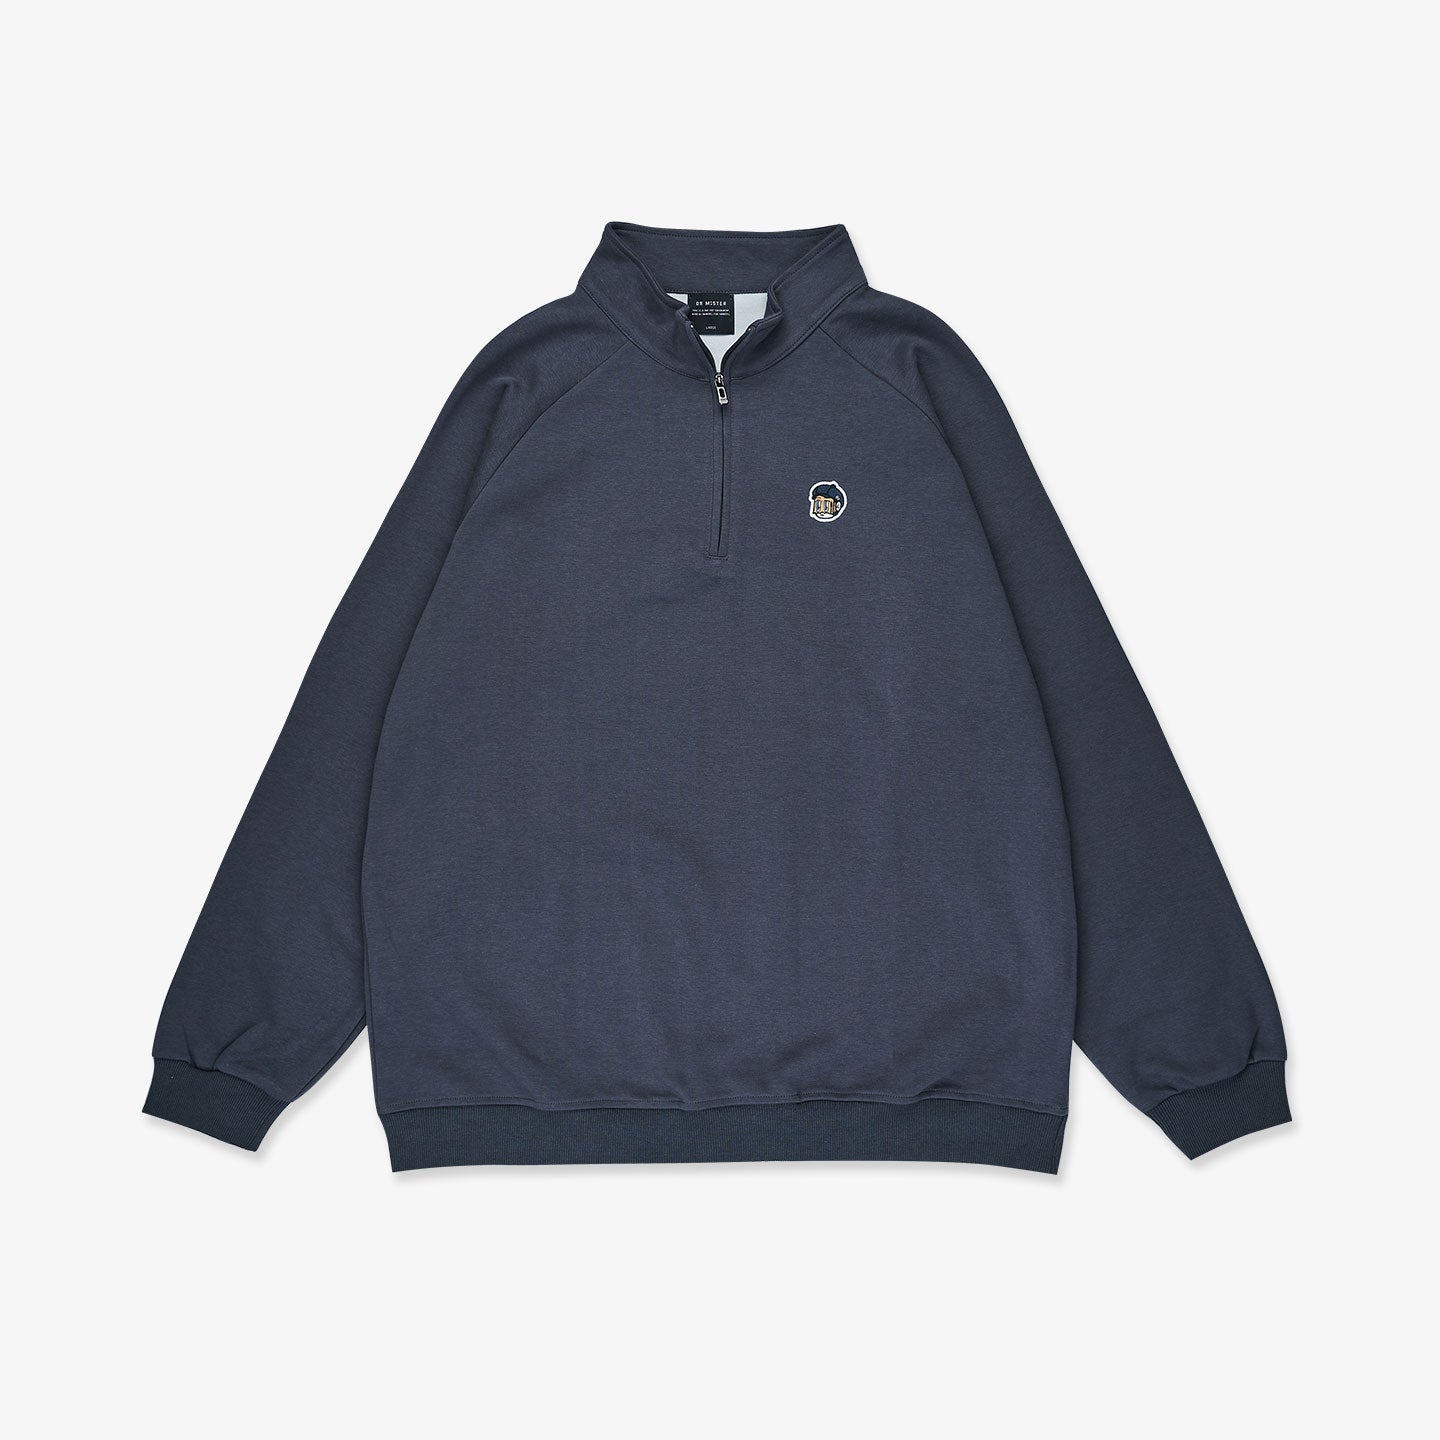 Primitive Half Zip Sweatshirt - Grey